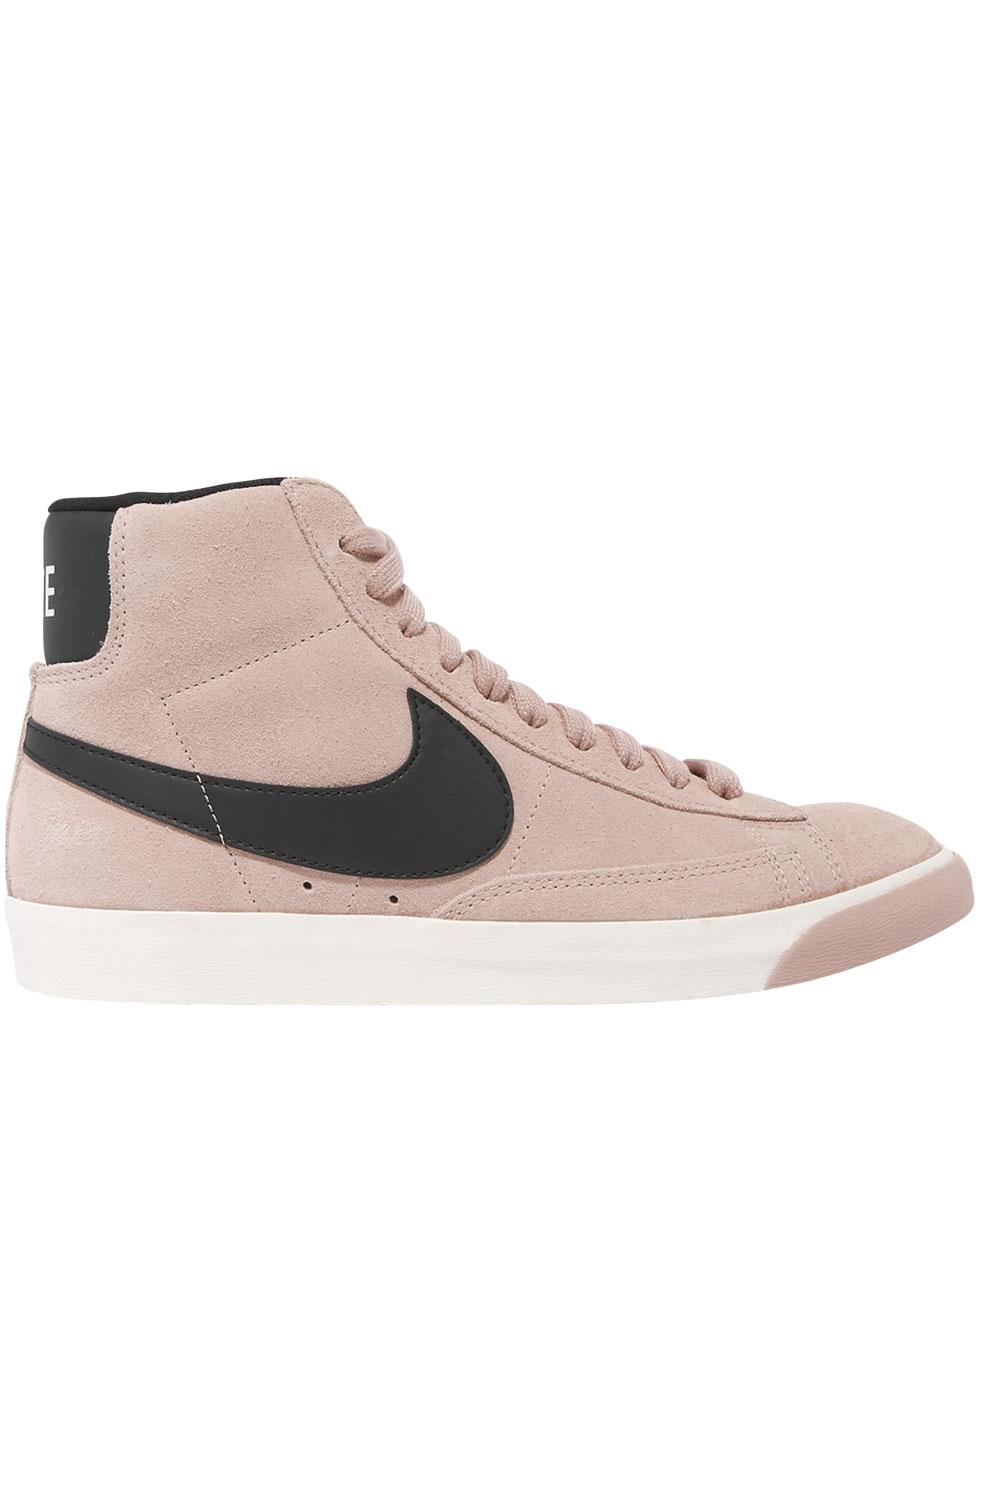 Sneaker (90 euro), Nike, nike.com